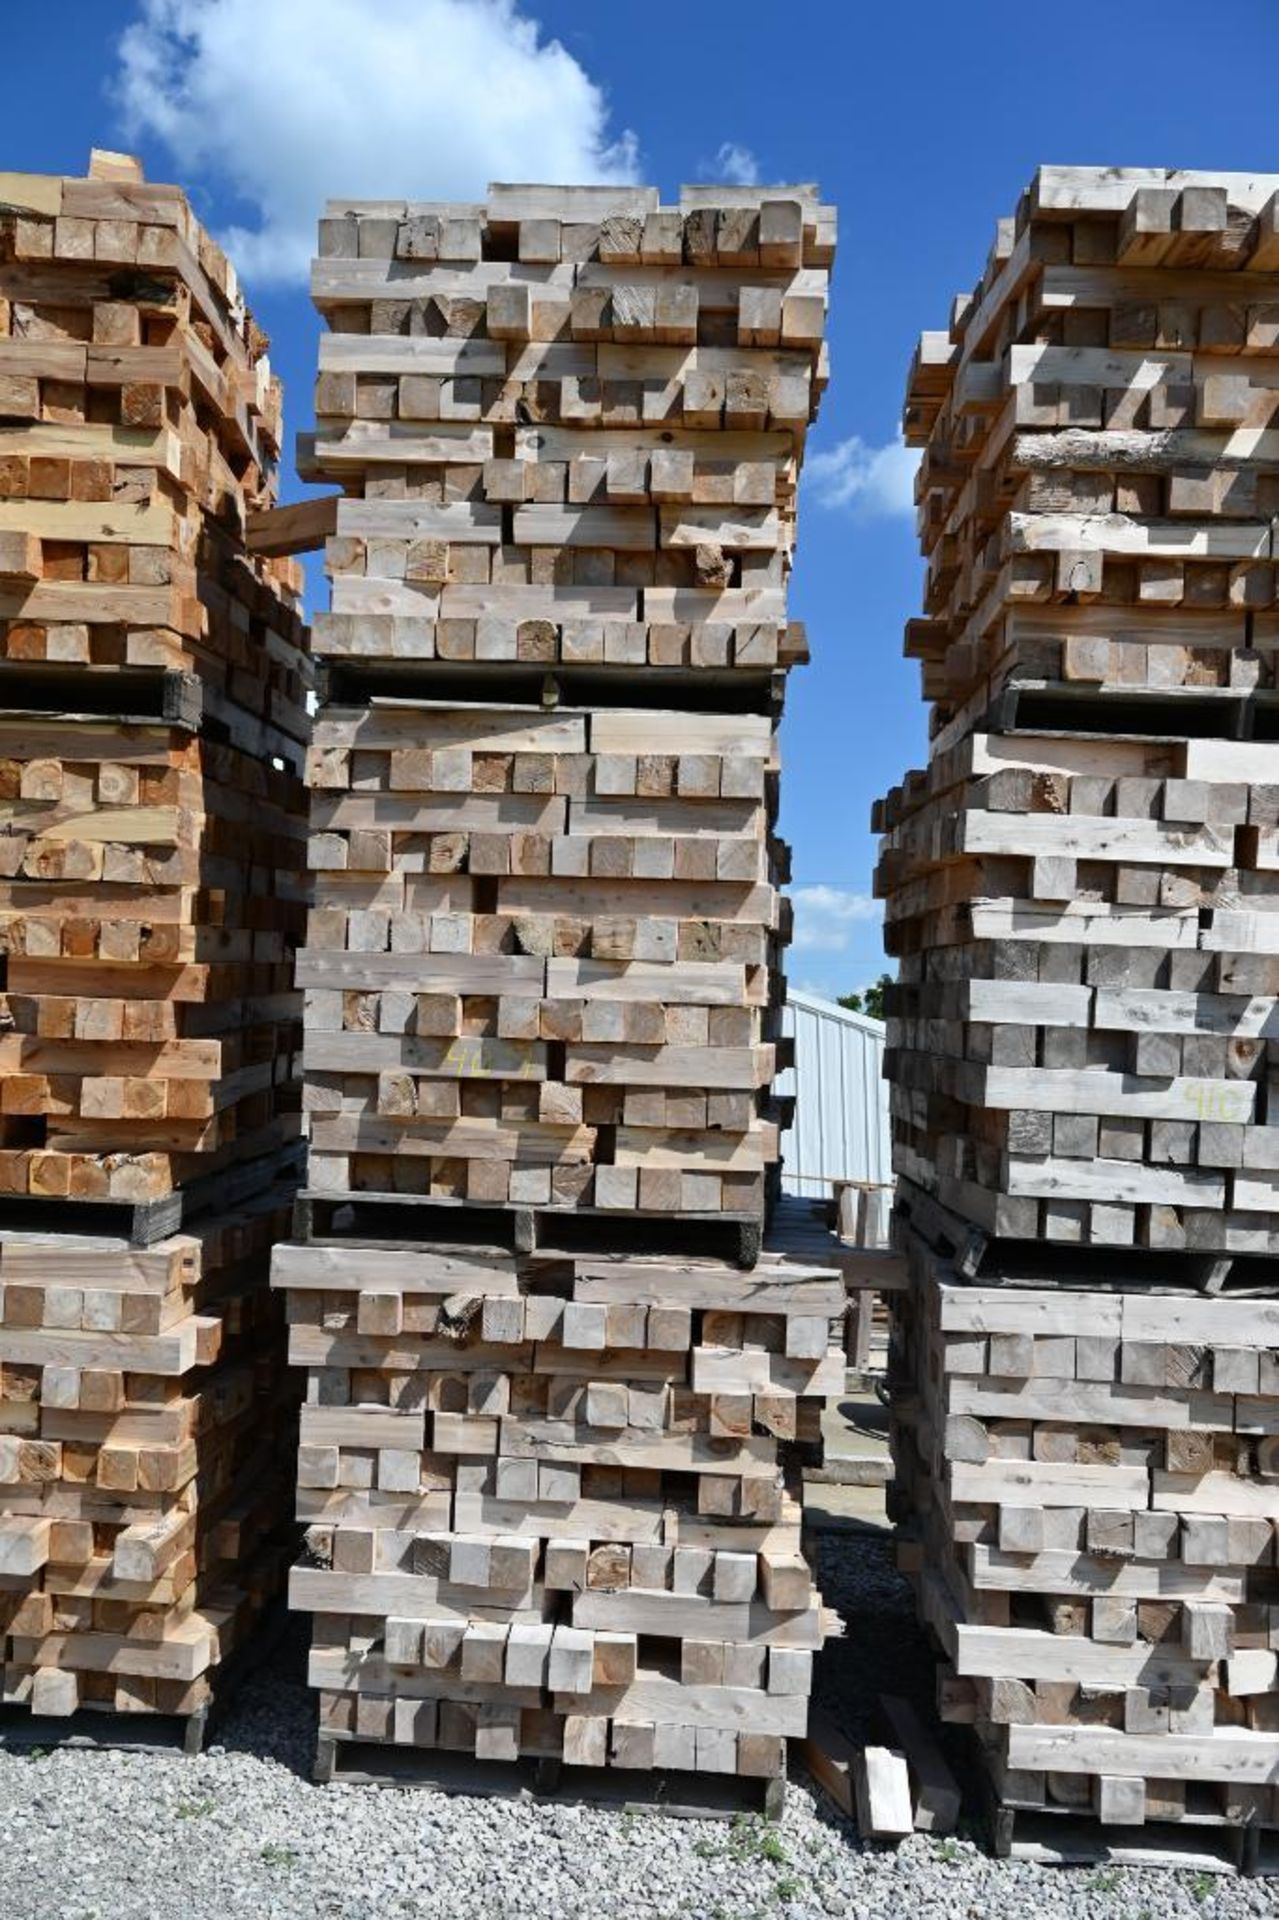 Cedar Firewood Blocks - Image 2 of 3